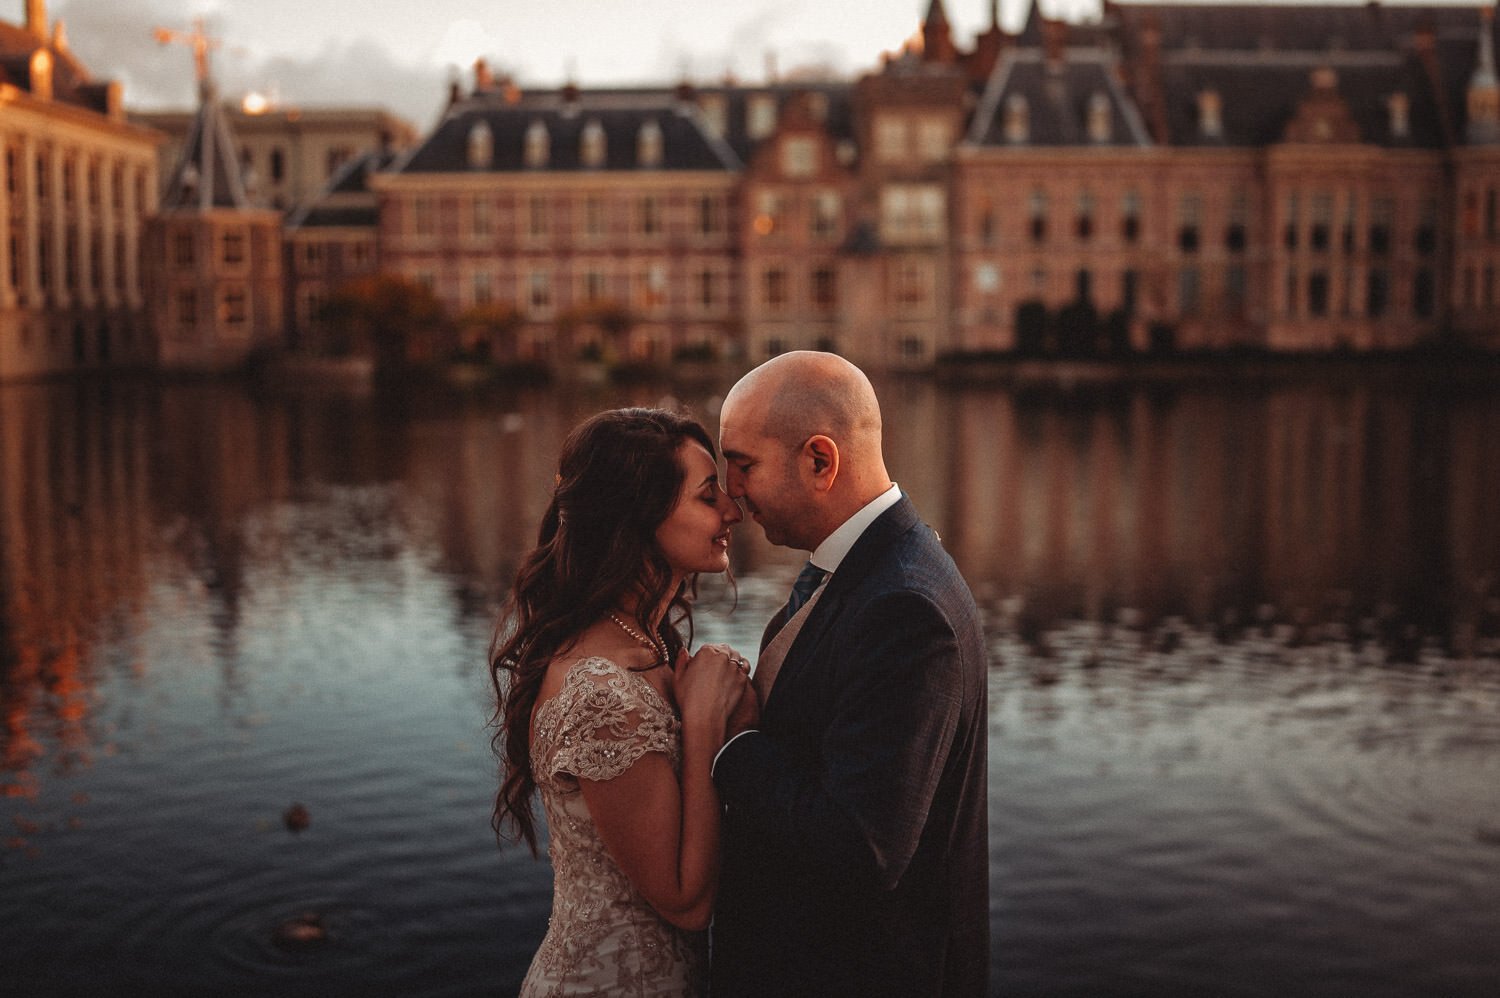 Meneer Kodak - Expat Wedding - The Hague -077.jpg